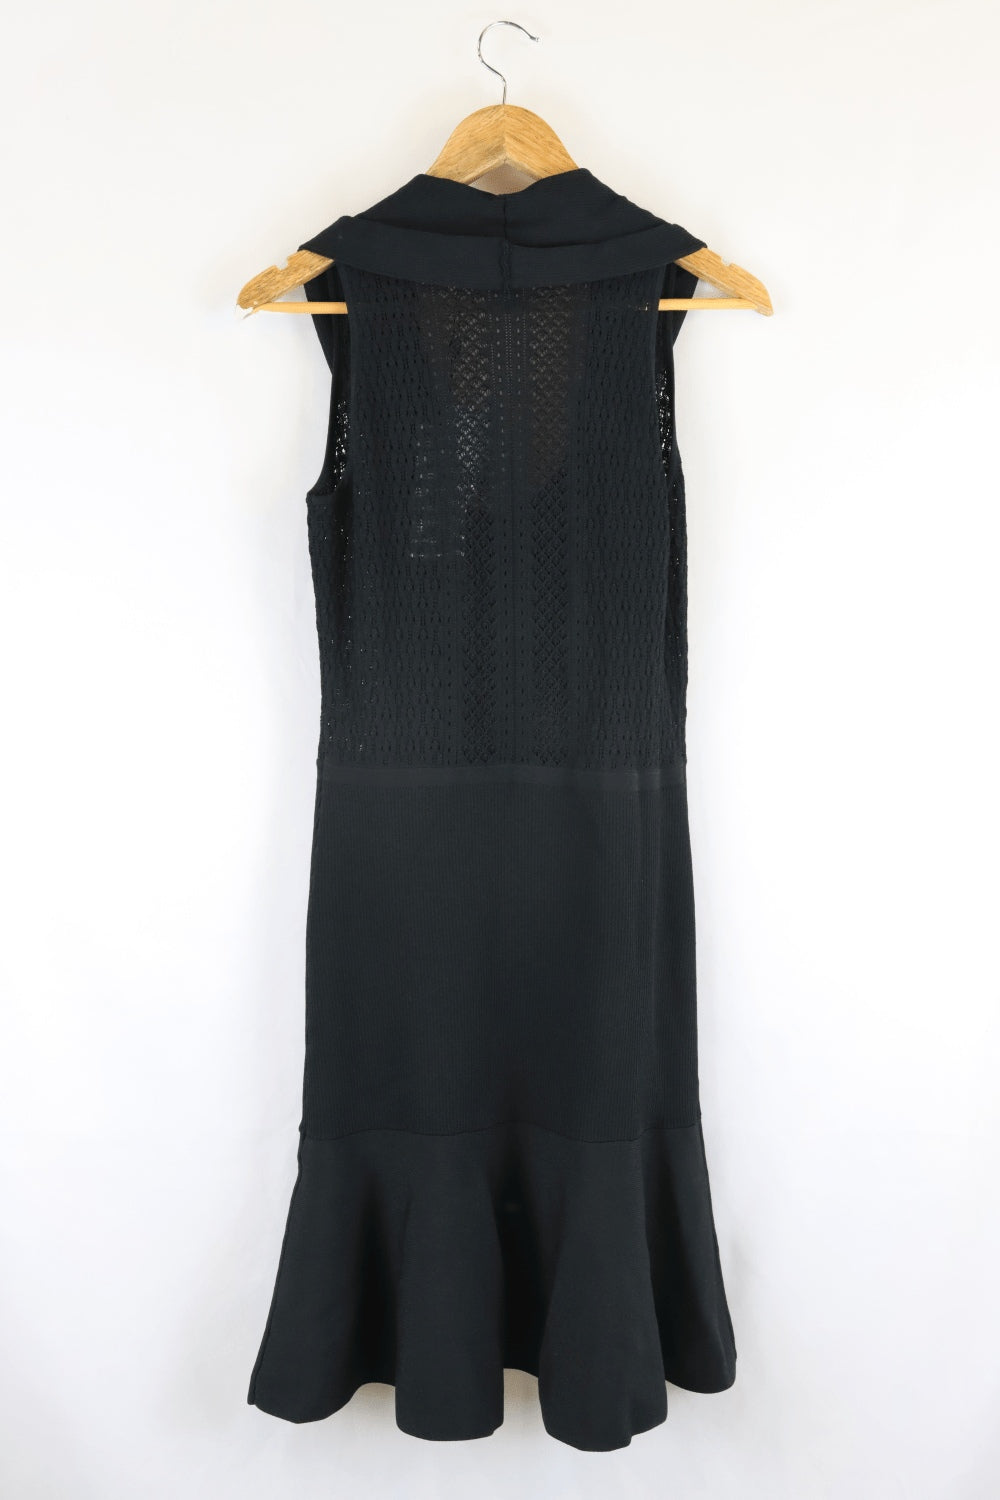 Karen Millen Black Dress S